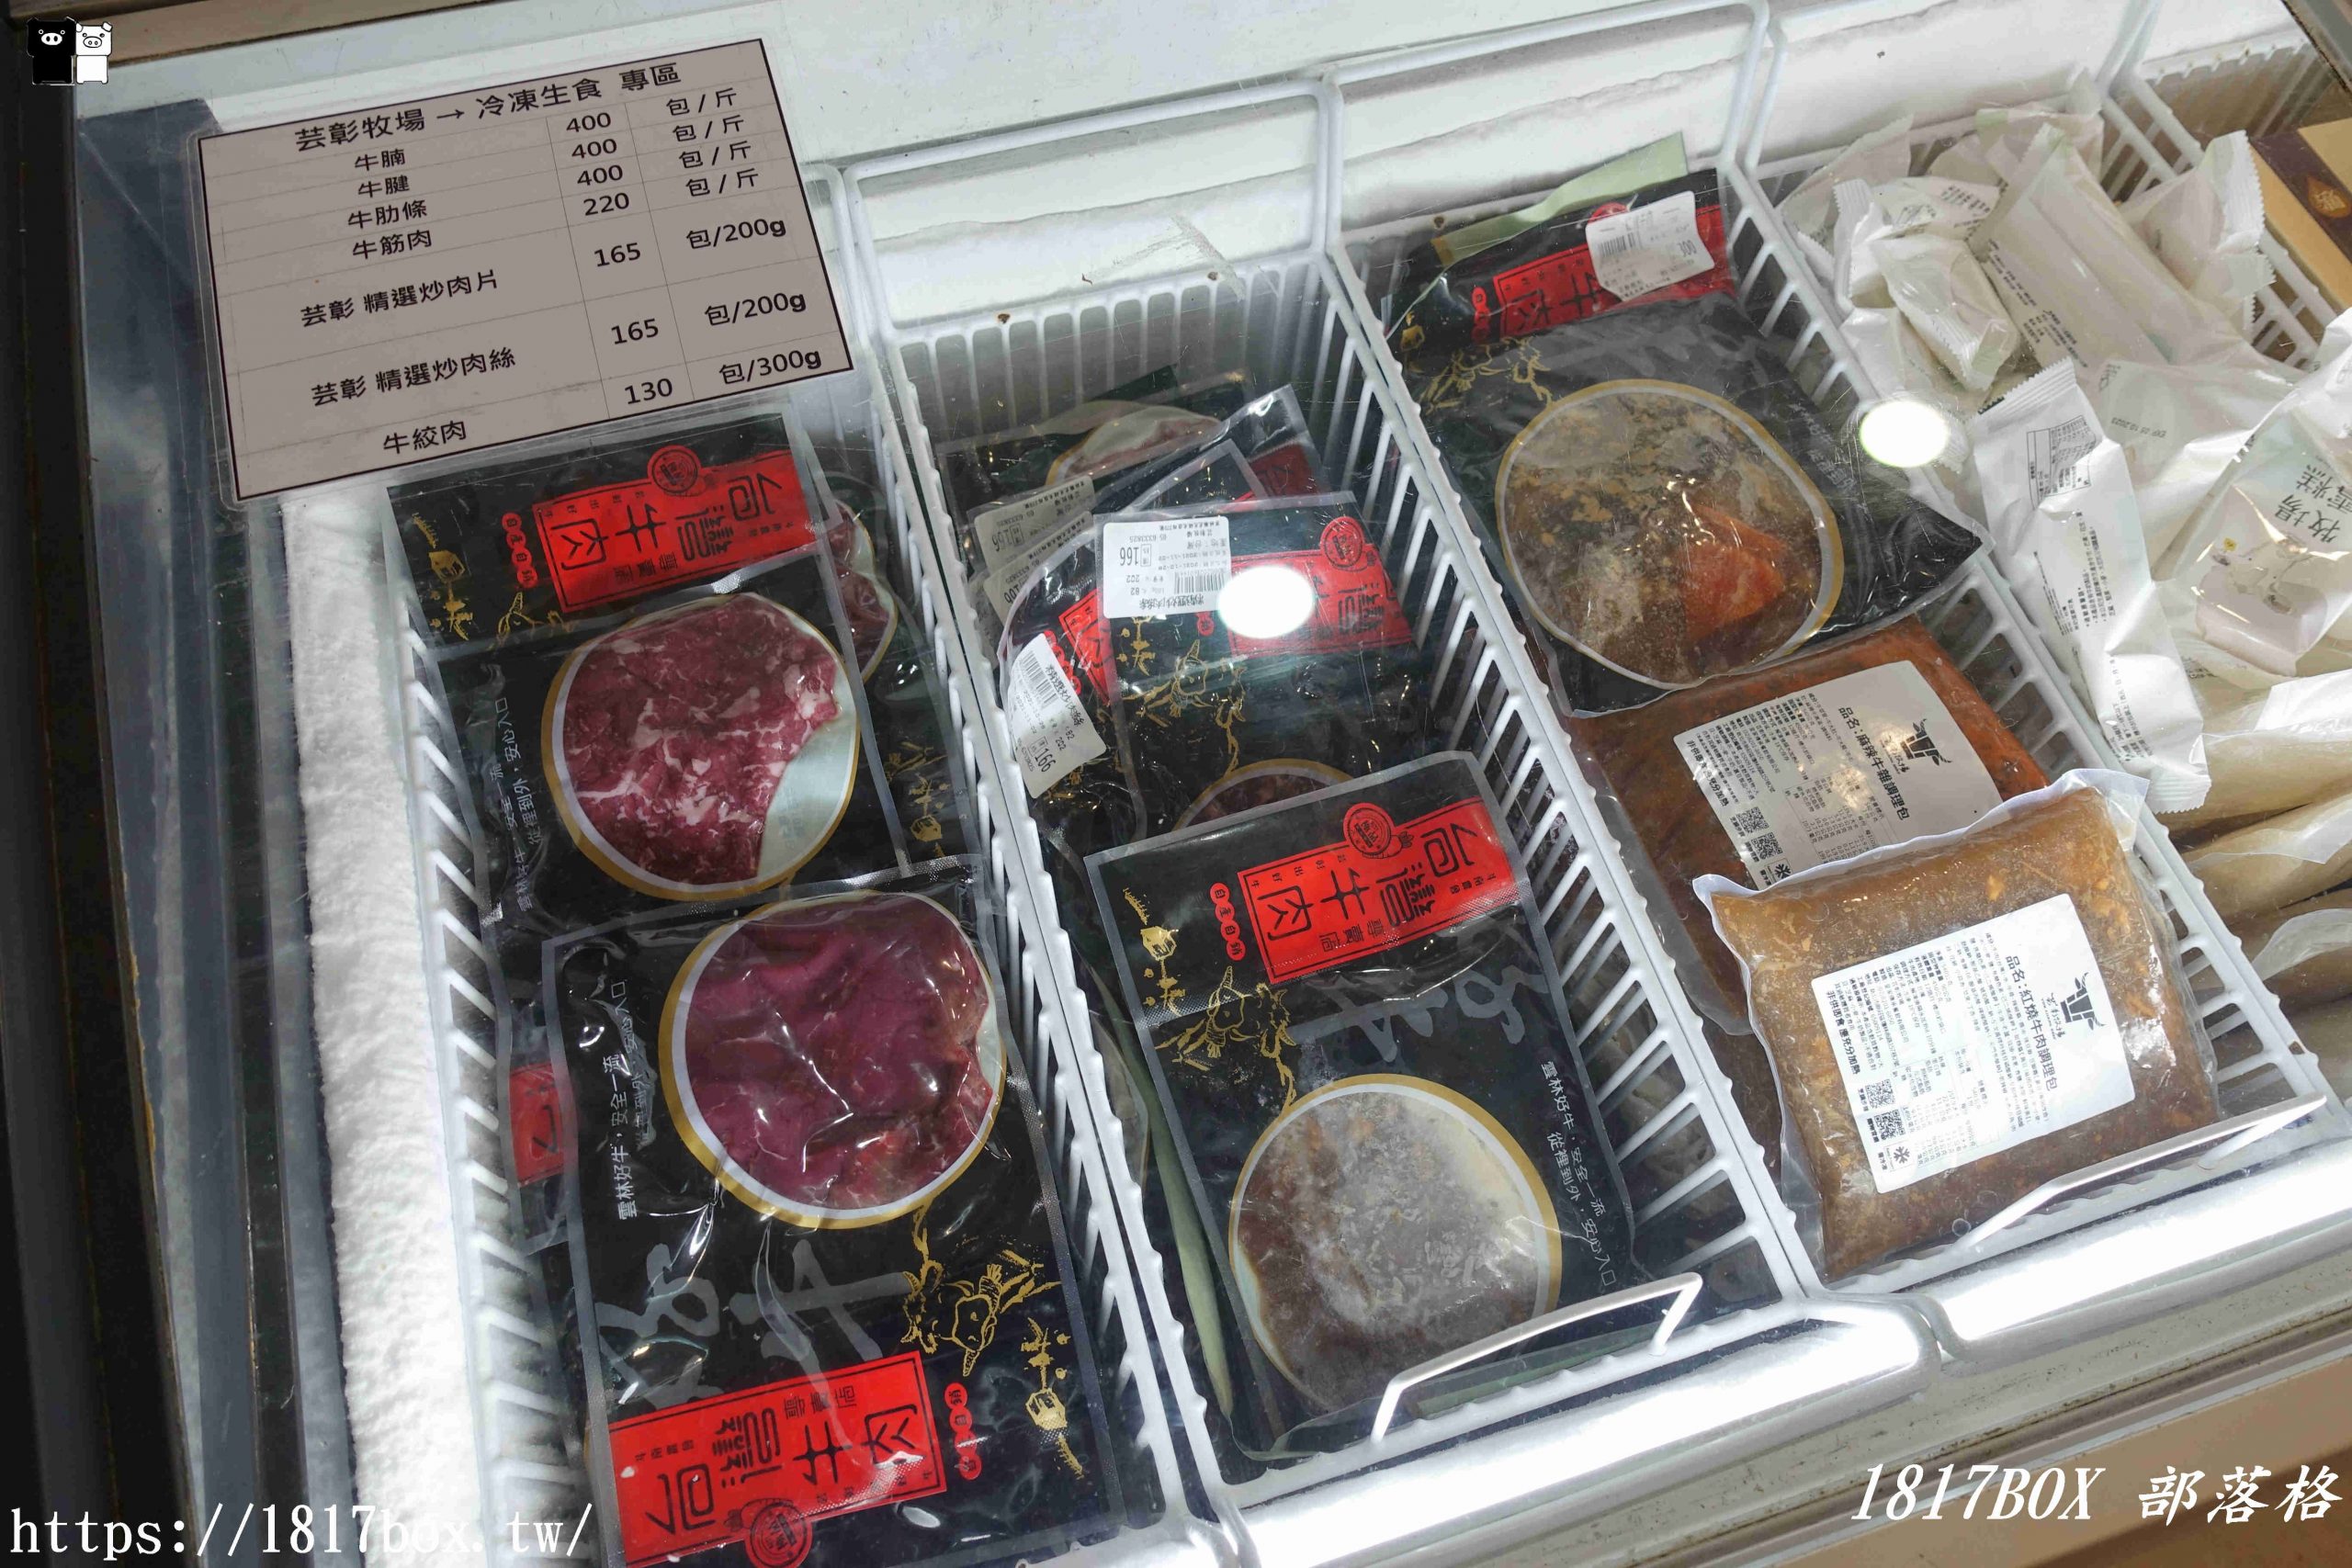 【雲林。虎尾】芸彰牧場台灣牛肉專賣店。每日現切溫體牛肉。從牧場到餐桌。產地直送